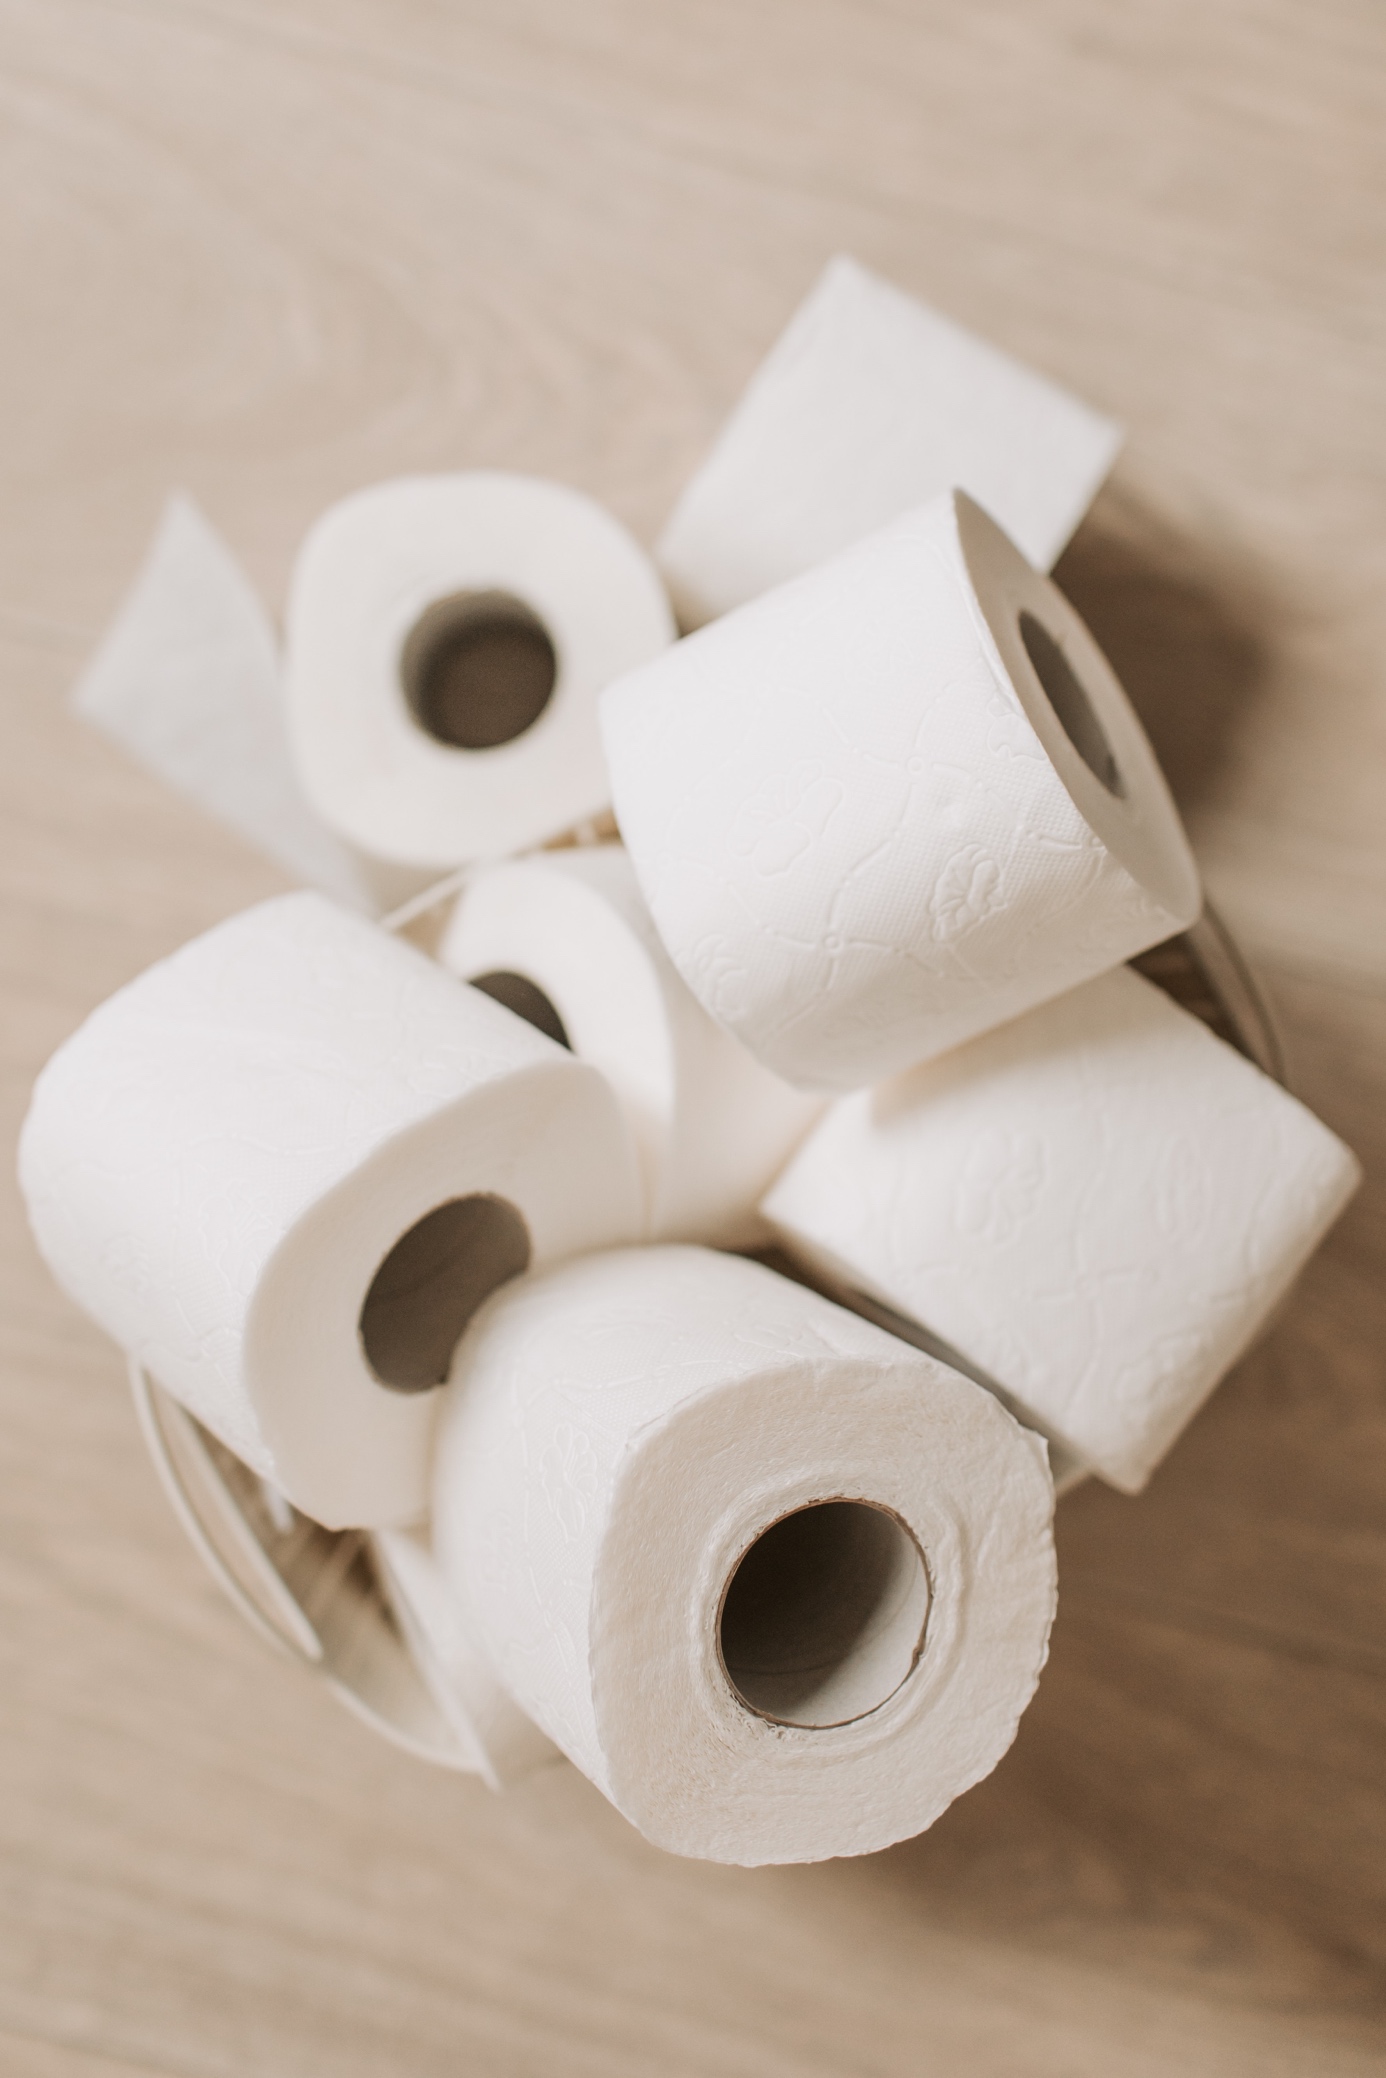 Le papier toilette est-il bon pour l'environnement ?